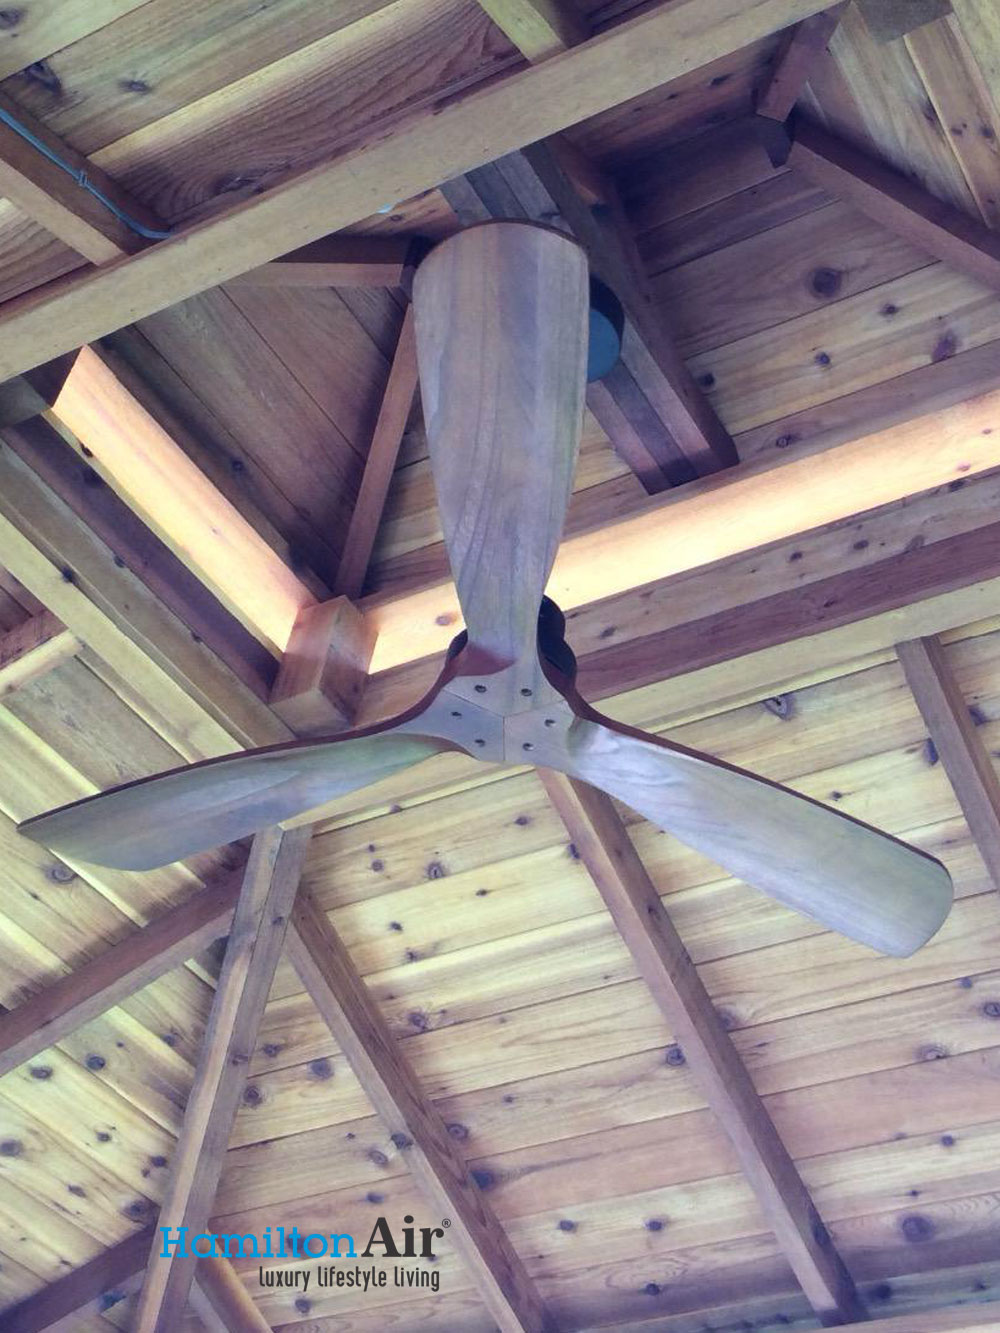 Đang tìm kiếm xu hướng quạt trần mới cho ngôi nhà của bạn? Quạt trần cánh gỗ đang là một trong những xu hướng hot nhất hiện nay, không chỉ giúp làm mát phòng mà còn tạo điểm nhấn nghệ thuật trong không gian sống.